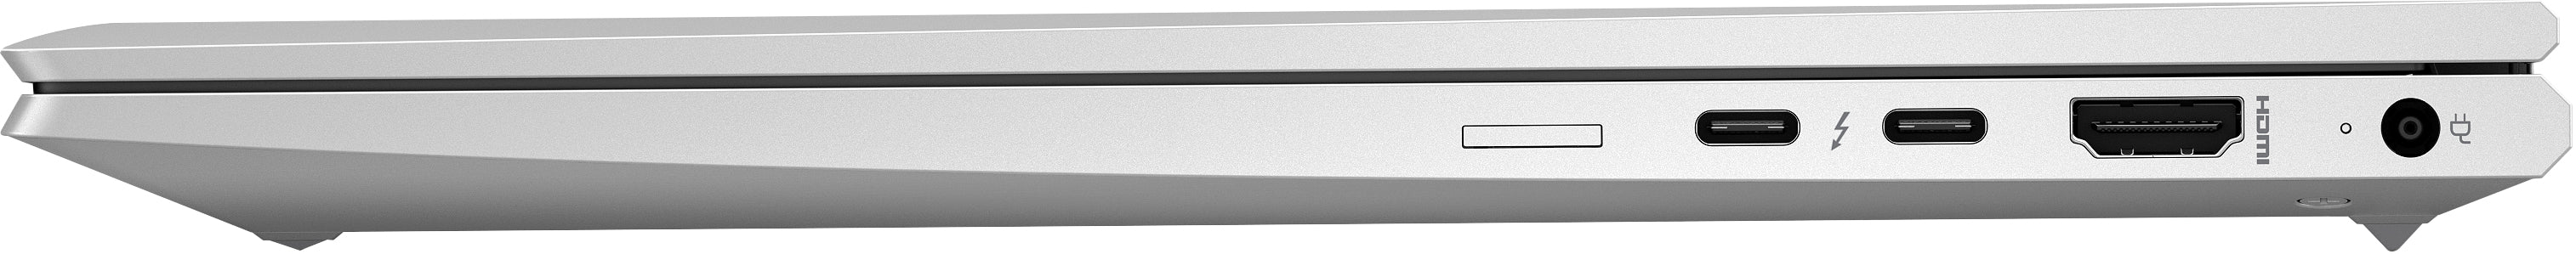 HP EliteBook 840 G7, Intel® Core™ i5, 1.6 GHz, 35.6 cm (14"), 1920 x 1080 pixels, 8 GB, 256 GB